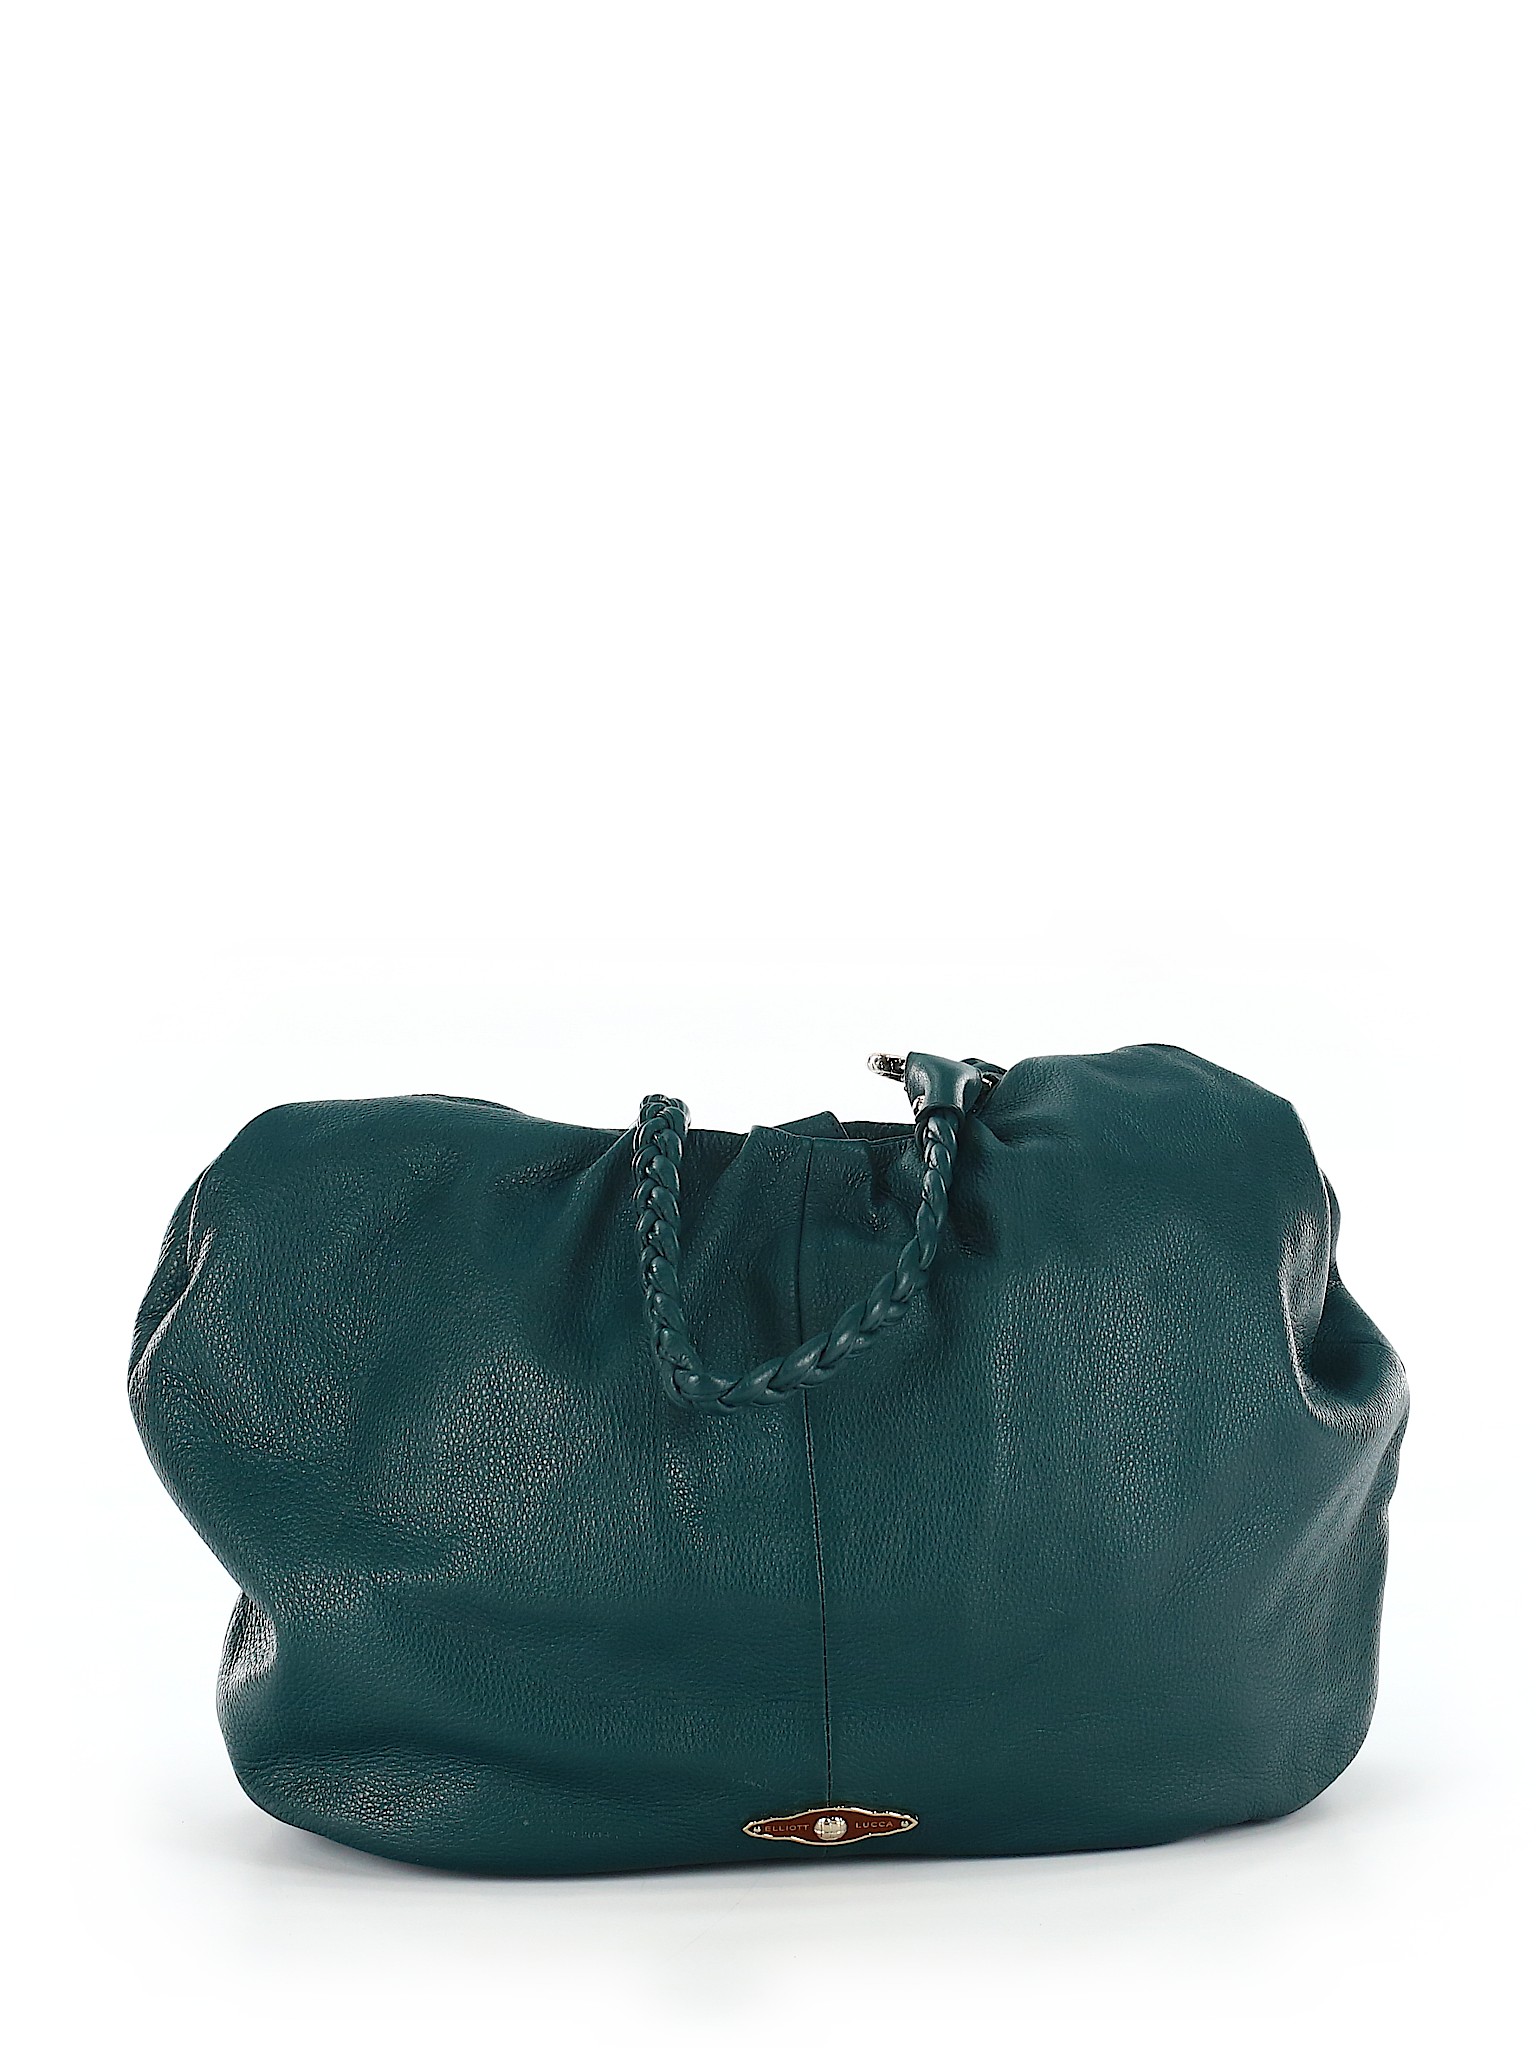 Elliott Lucca 100% Leather Solid Teal Leather Shoulder Bag One Size ...